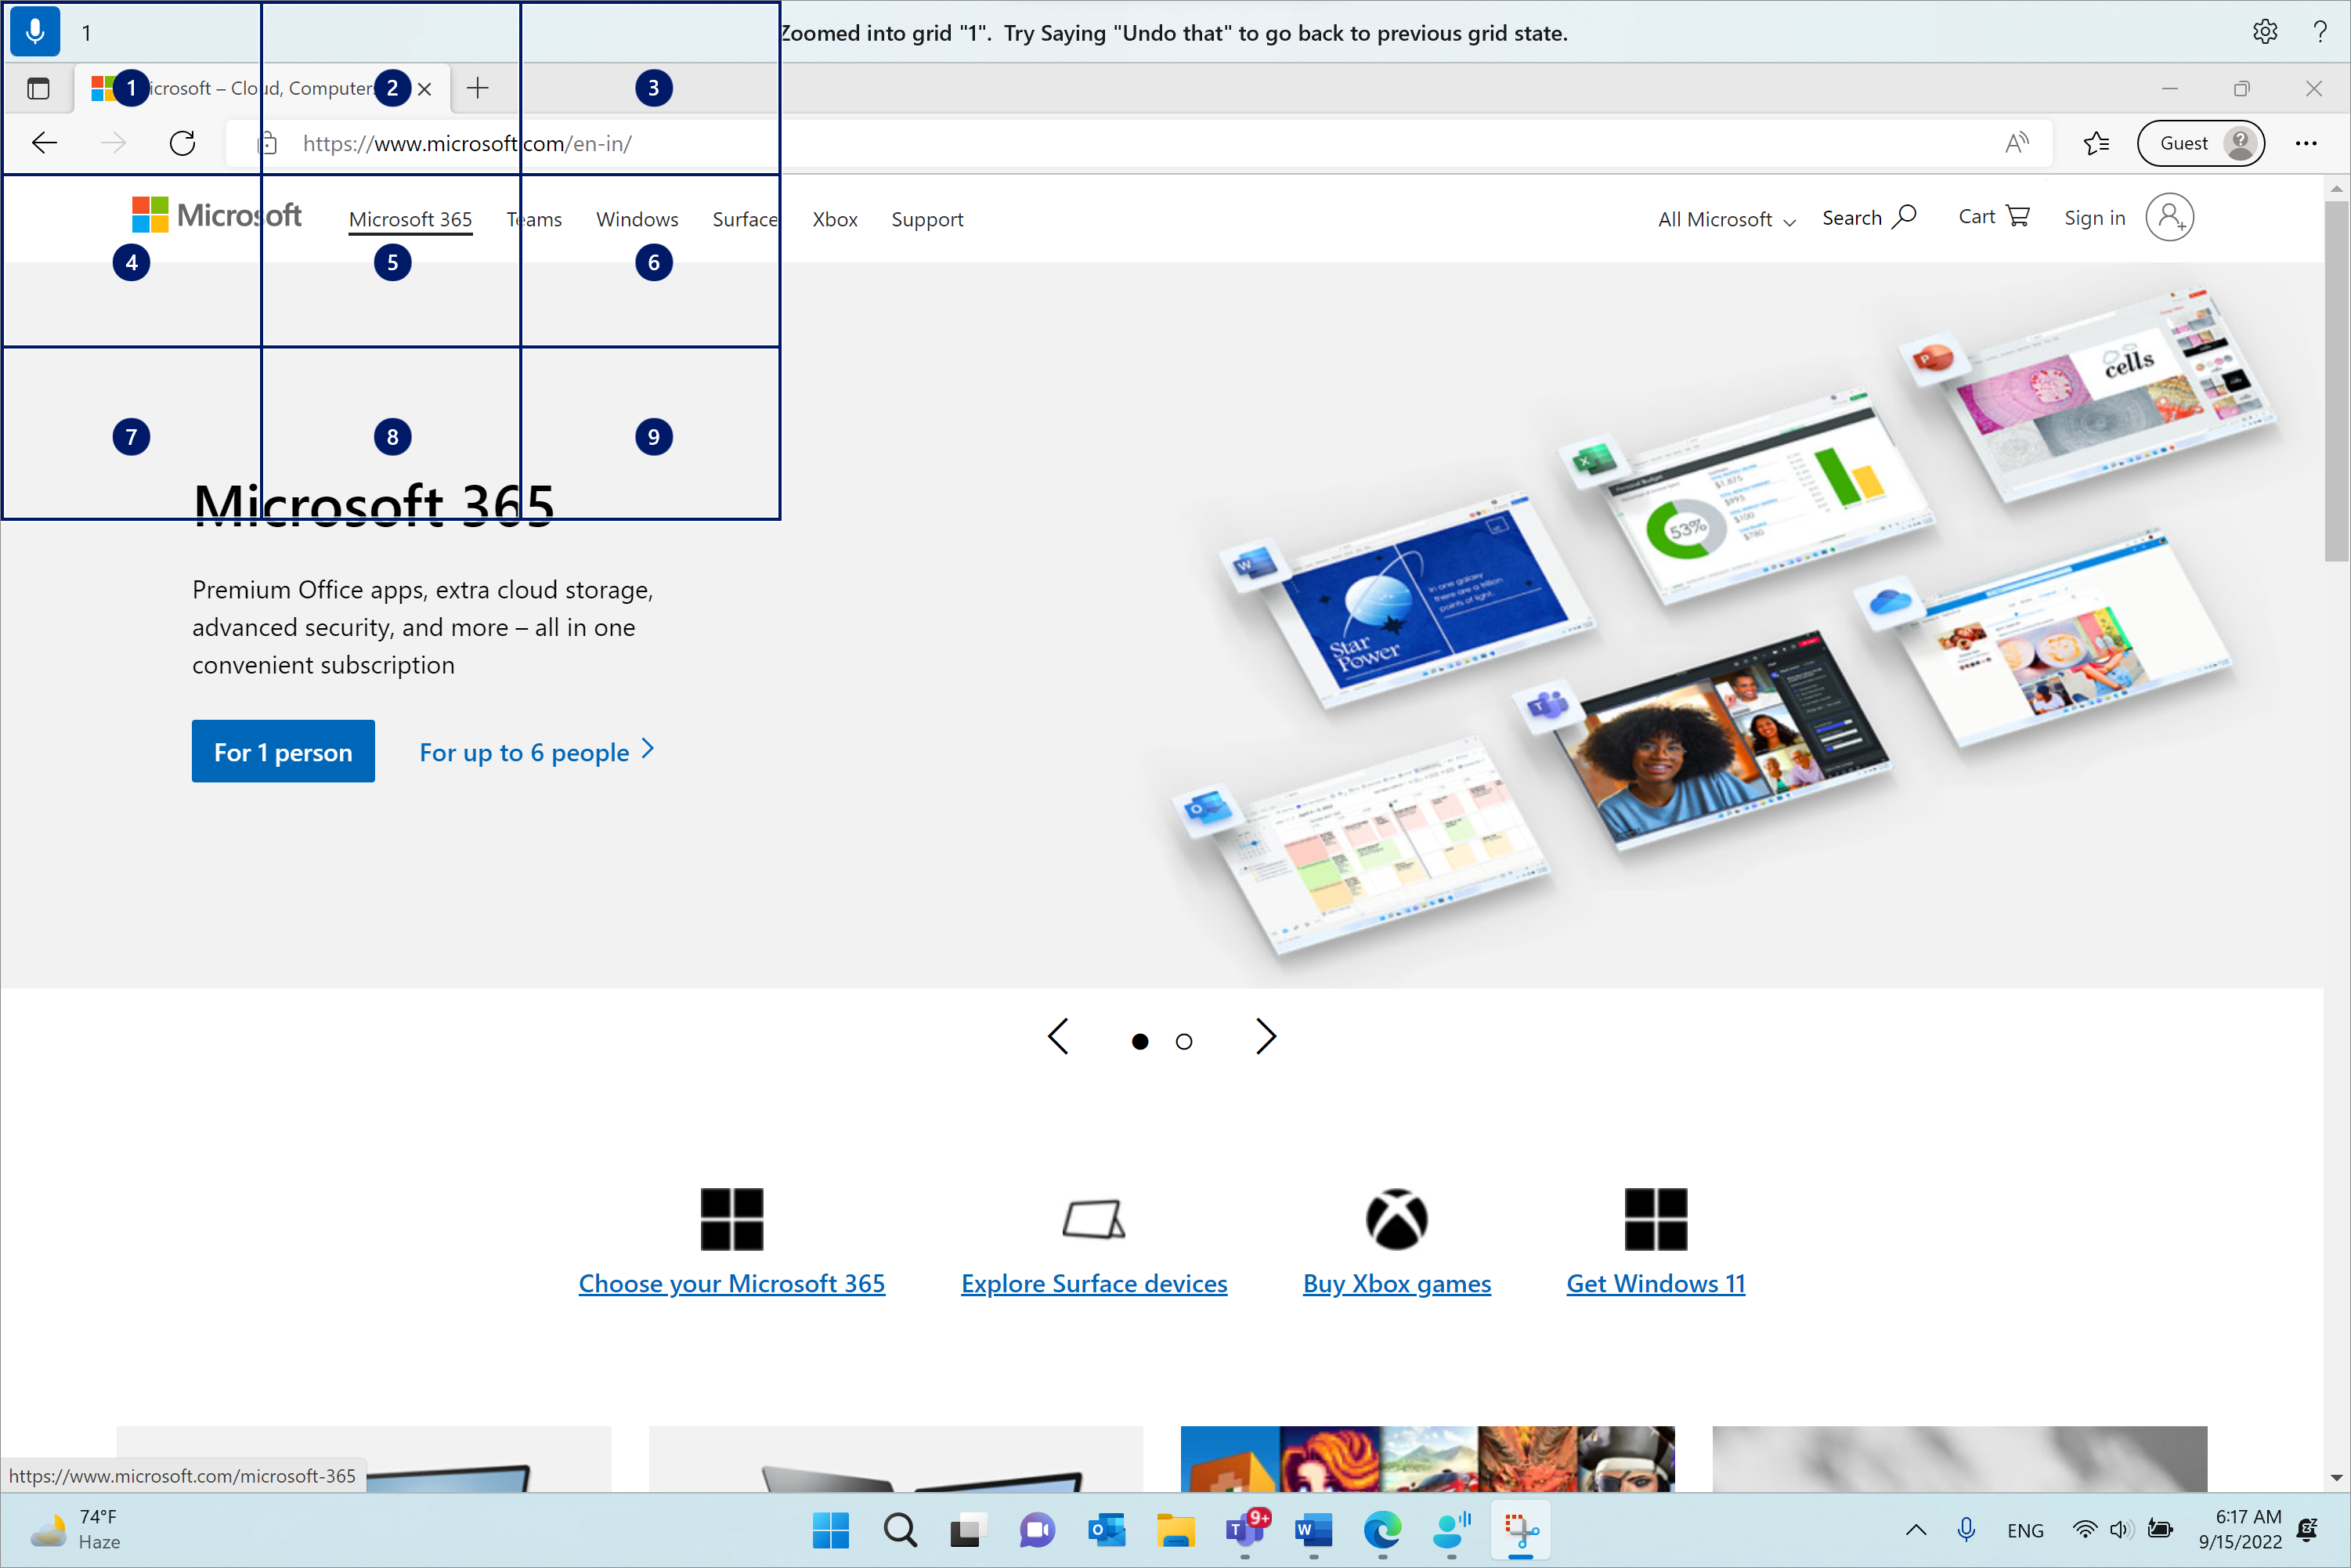 Microsoft Edge ir atvērts un Microsoft.com lapā. Balss piekļuves josla atrodas augšā un klausīšanās stāvoklī. Komanda ir "1", un parādītā atsauksmes ir "Tuvinātas režģī "1". Mēģiniet pateikt "Atsaukt šo" un atgriezties pie iepriekšējā režģa stāvokļa.